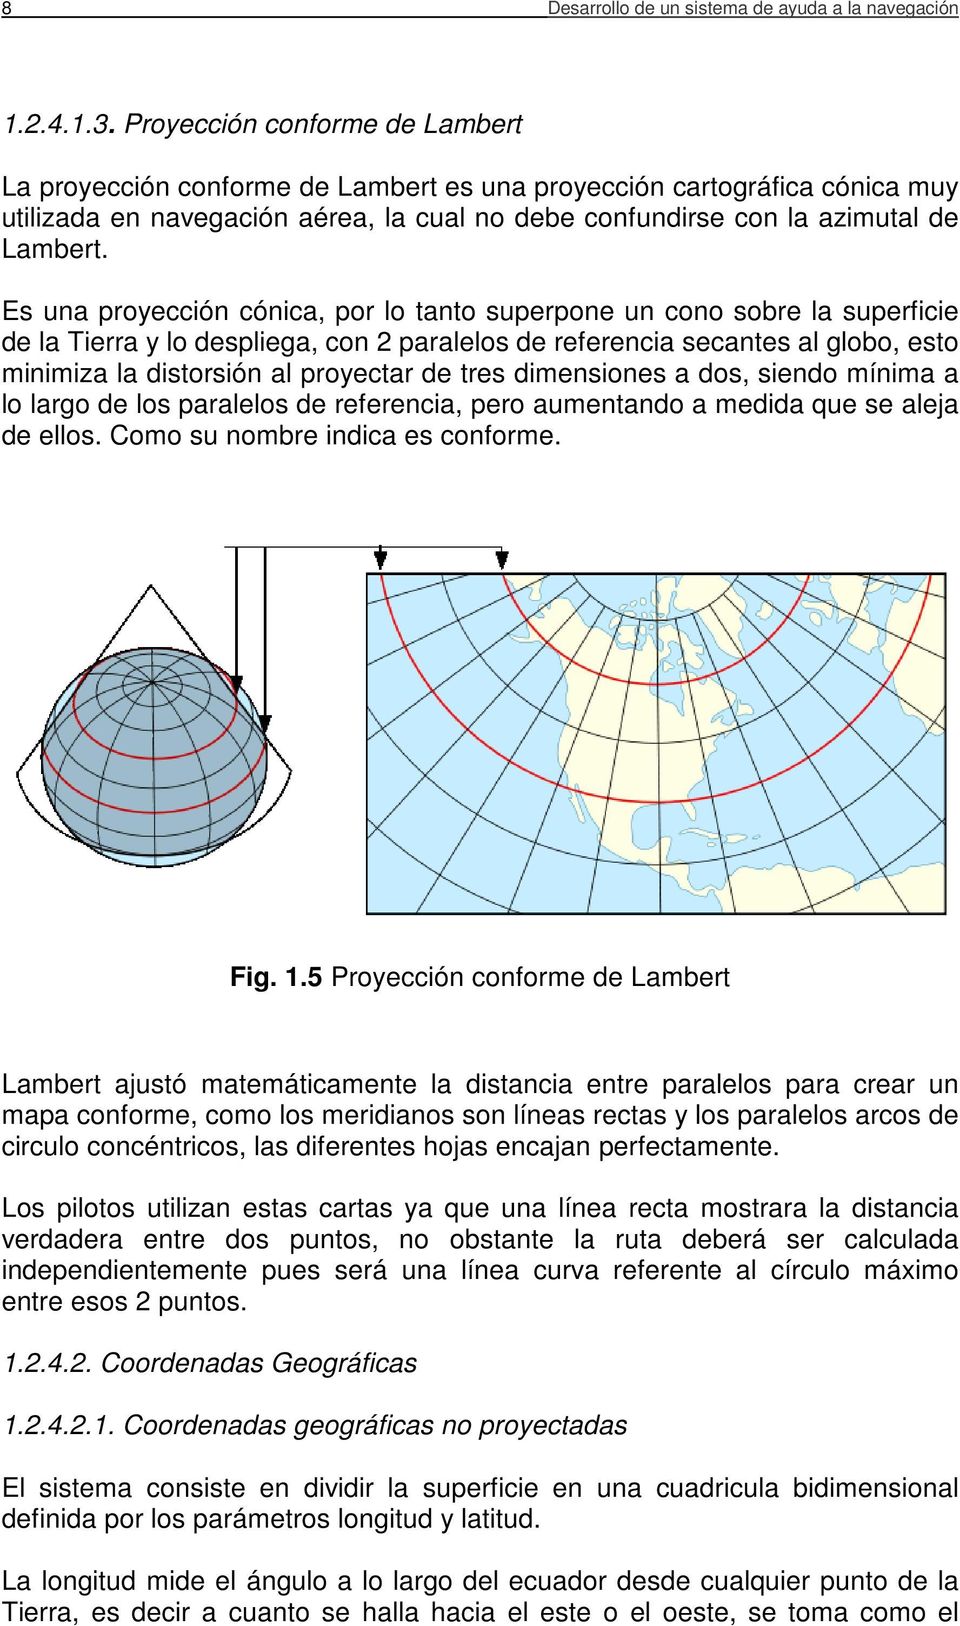 Es una proyección cónica, por lo tanto superpone un cono sobre la superficie de la Tierra y lo despliega, con 2 paralelos de referencia secantes al globo, esto minimiza la distorsión al proyectar de